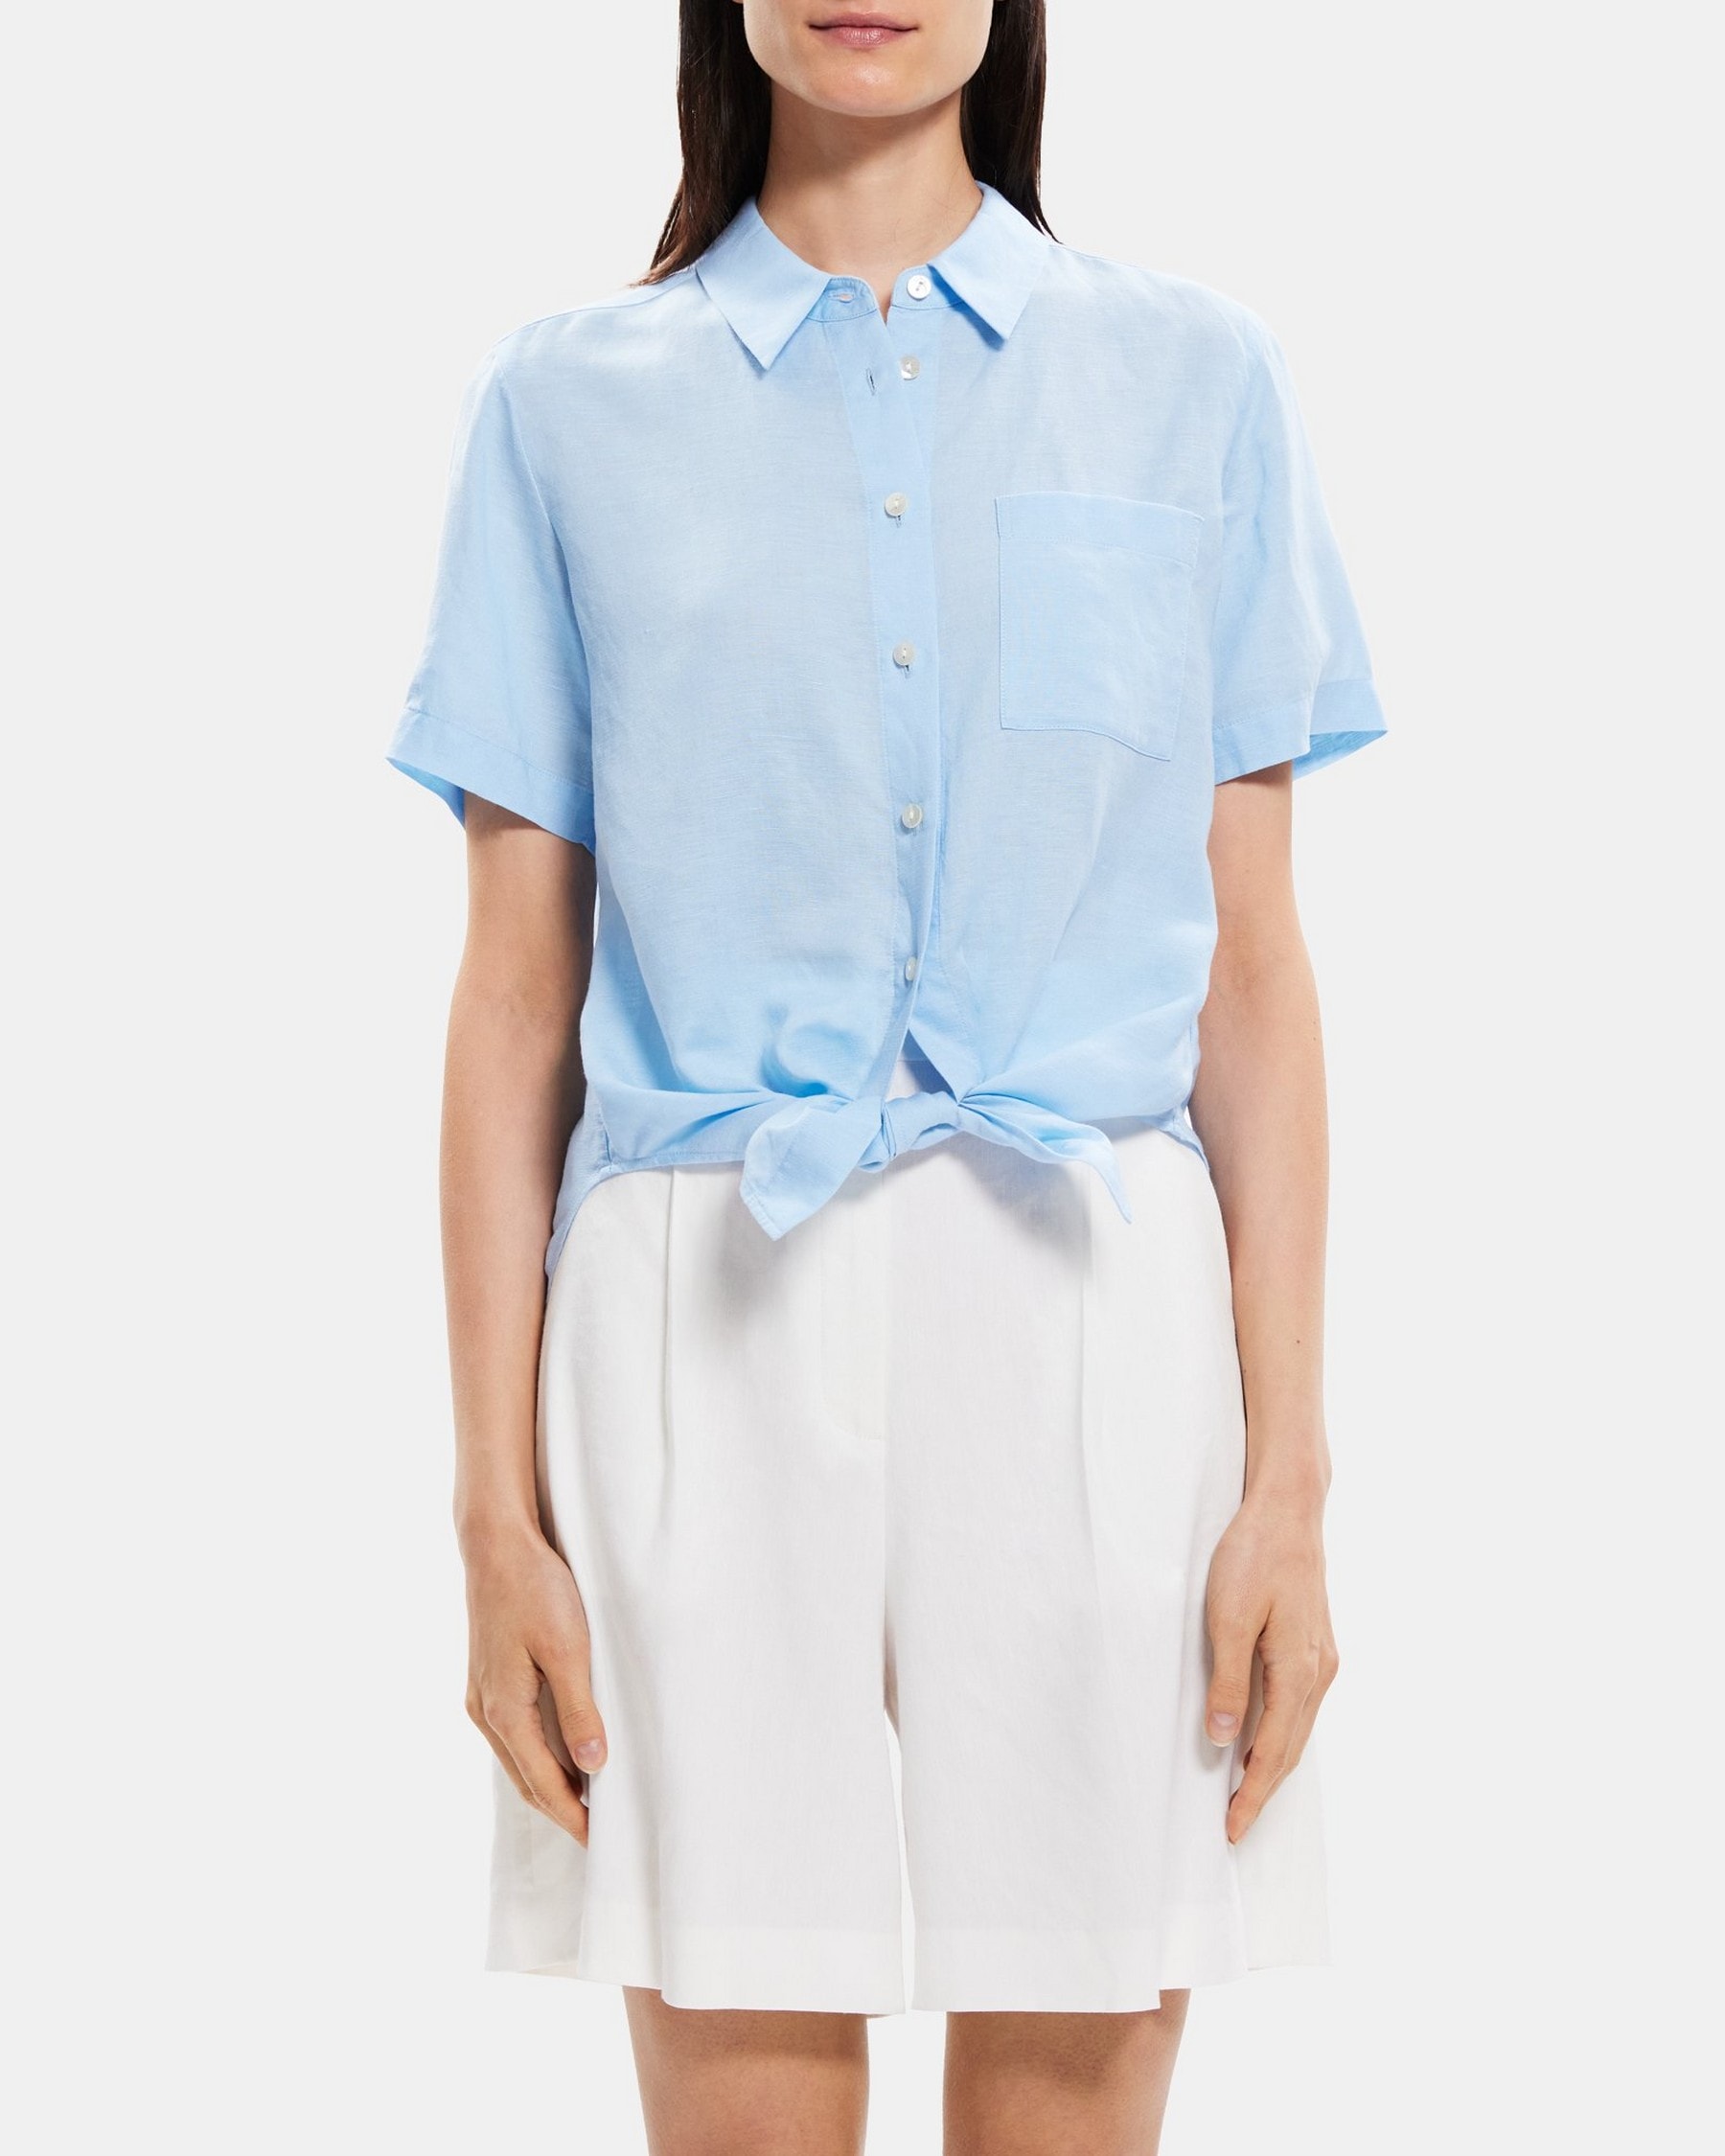 띠어리 린넨 반팔 셔츠 (프론트 타이) N053505R Theory Tie-Front Shirt in Linen-Tencel,BAY BLUE